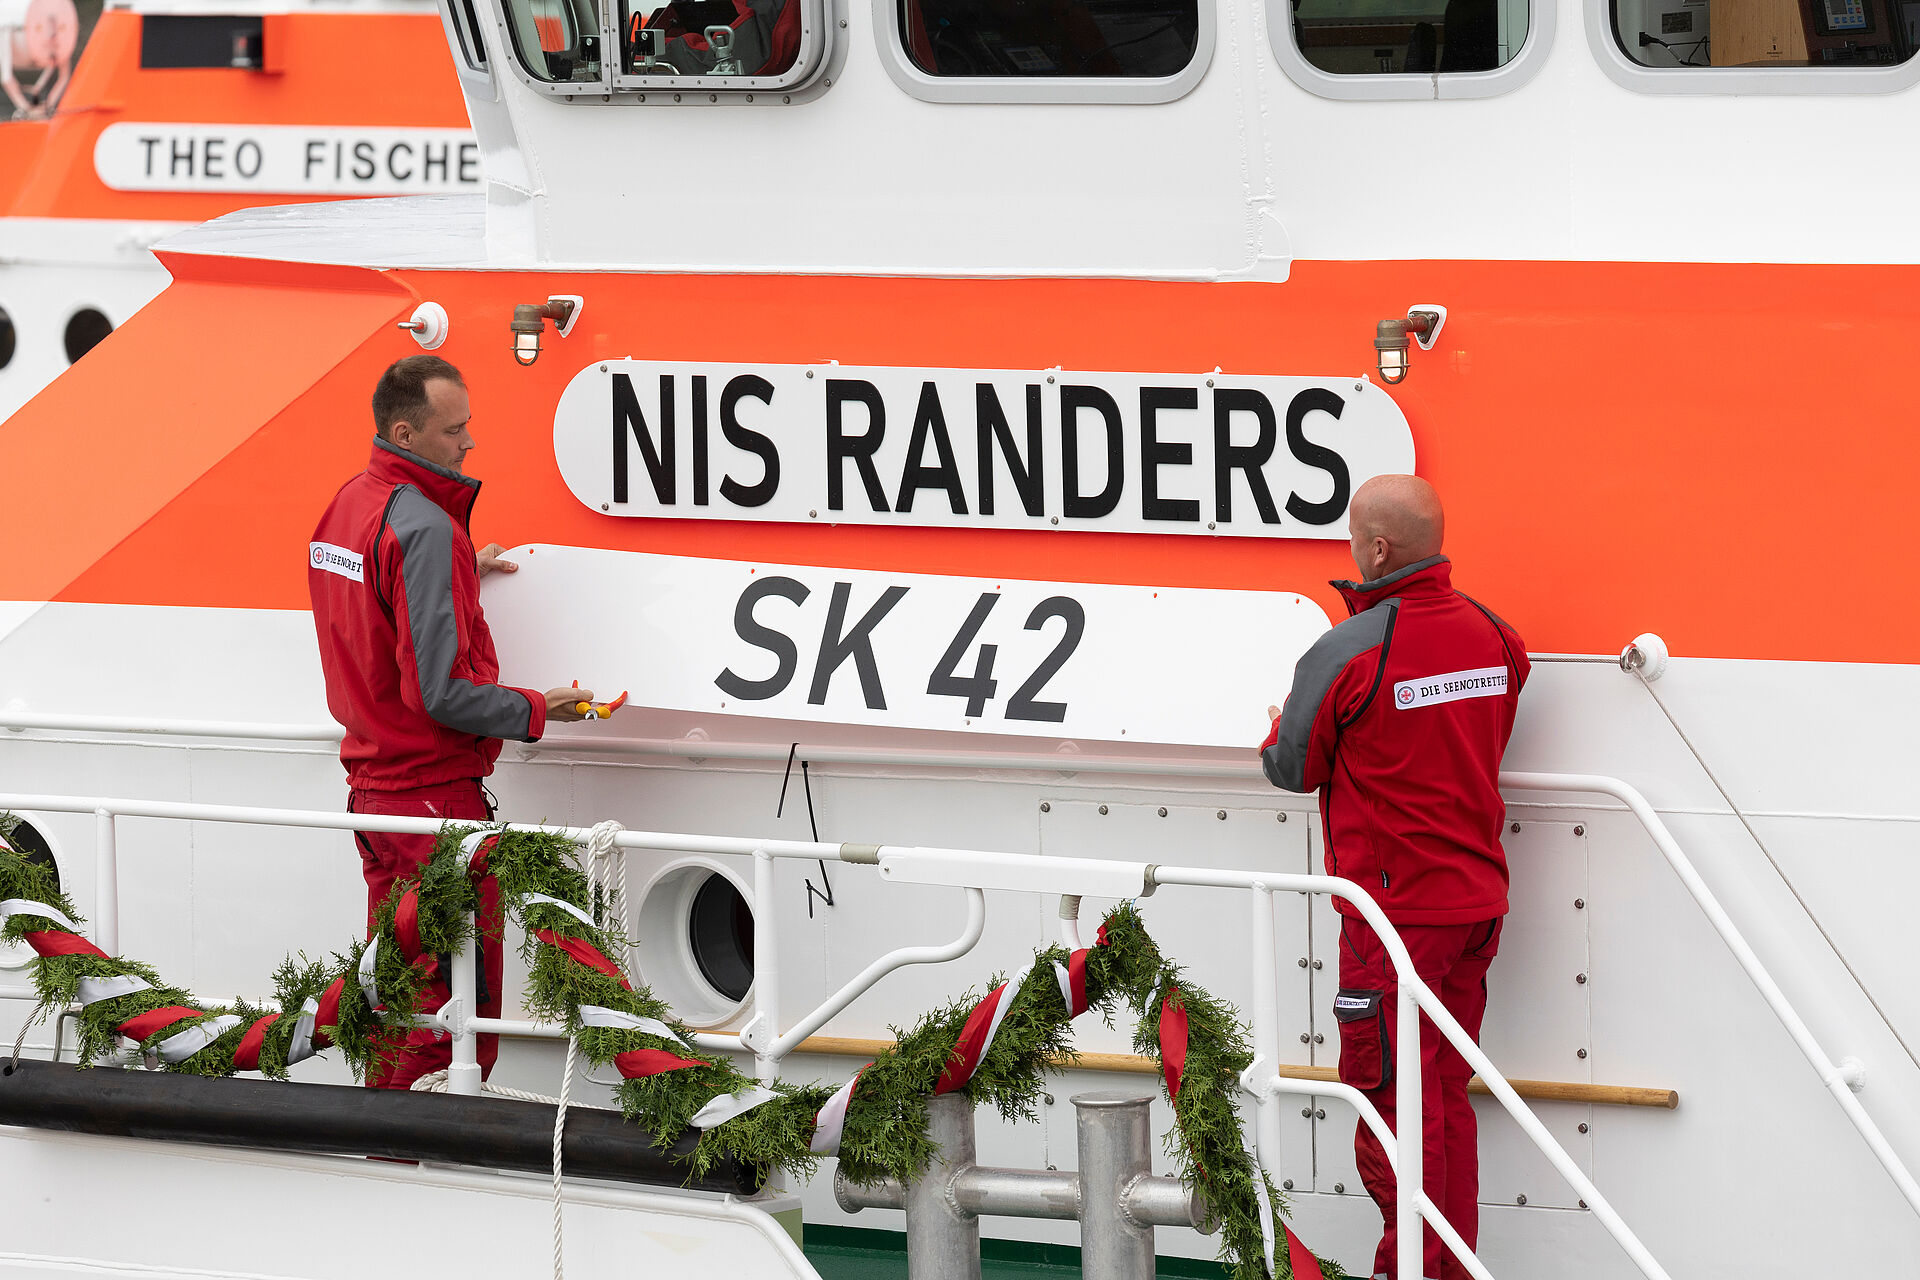 Enthüllung des Namens NIS RANDERS an einem Seenotrettungskreuzer der DGzRS